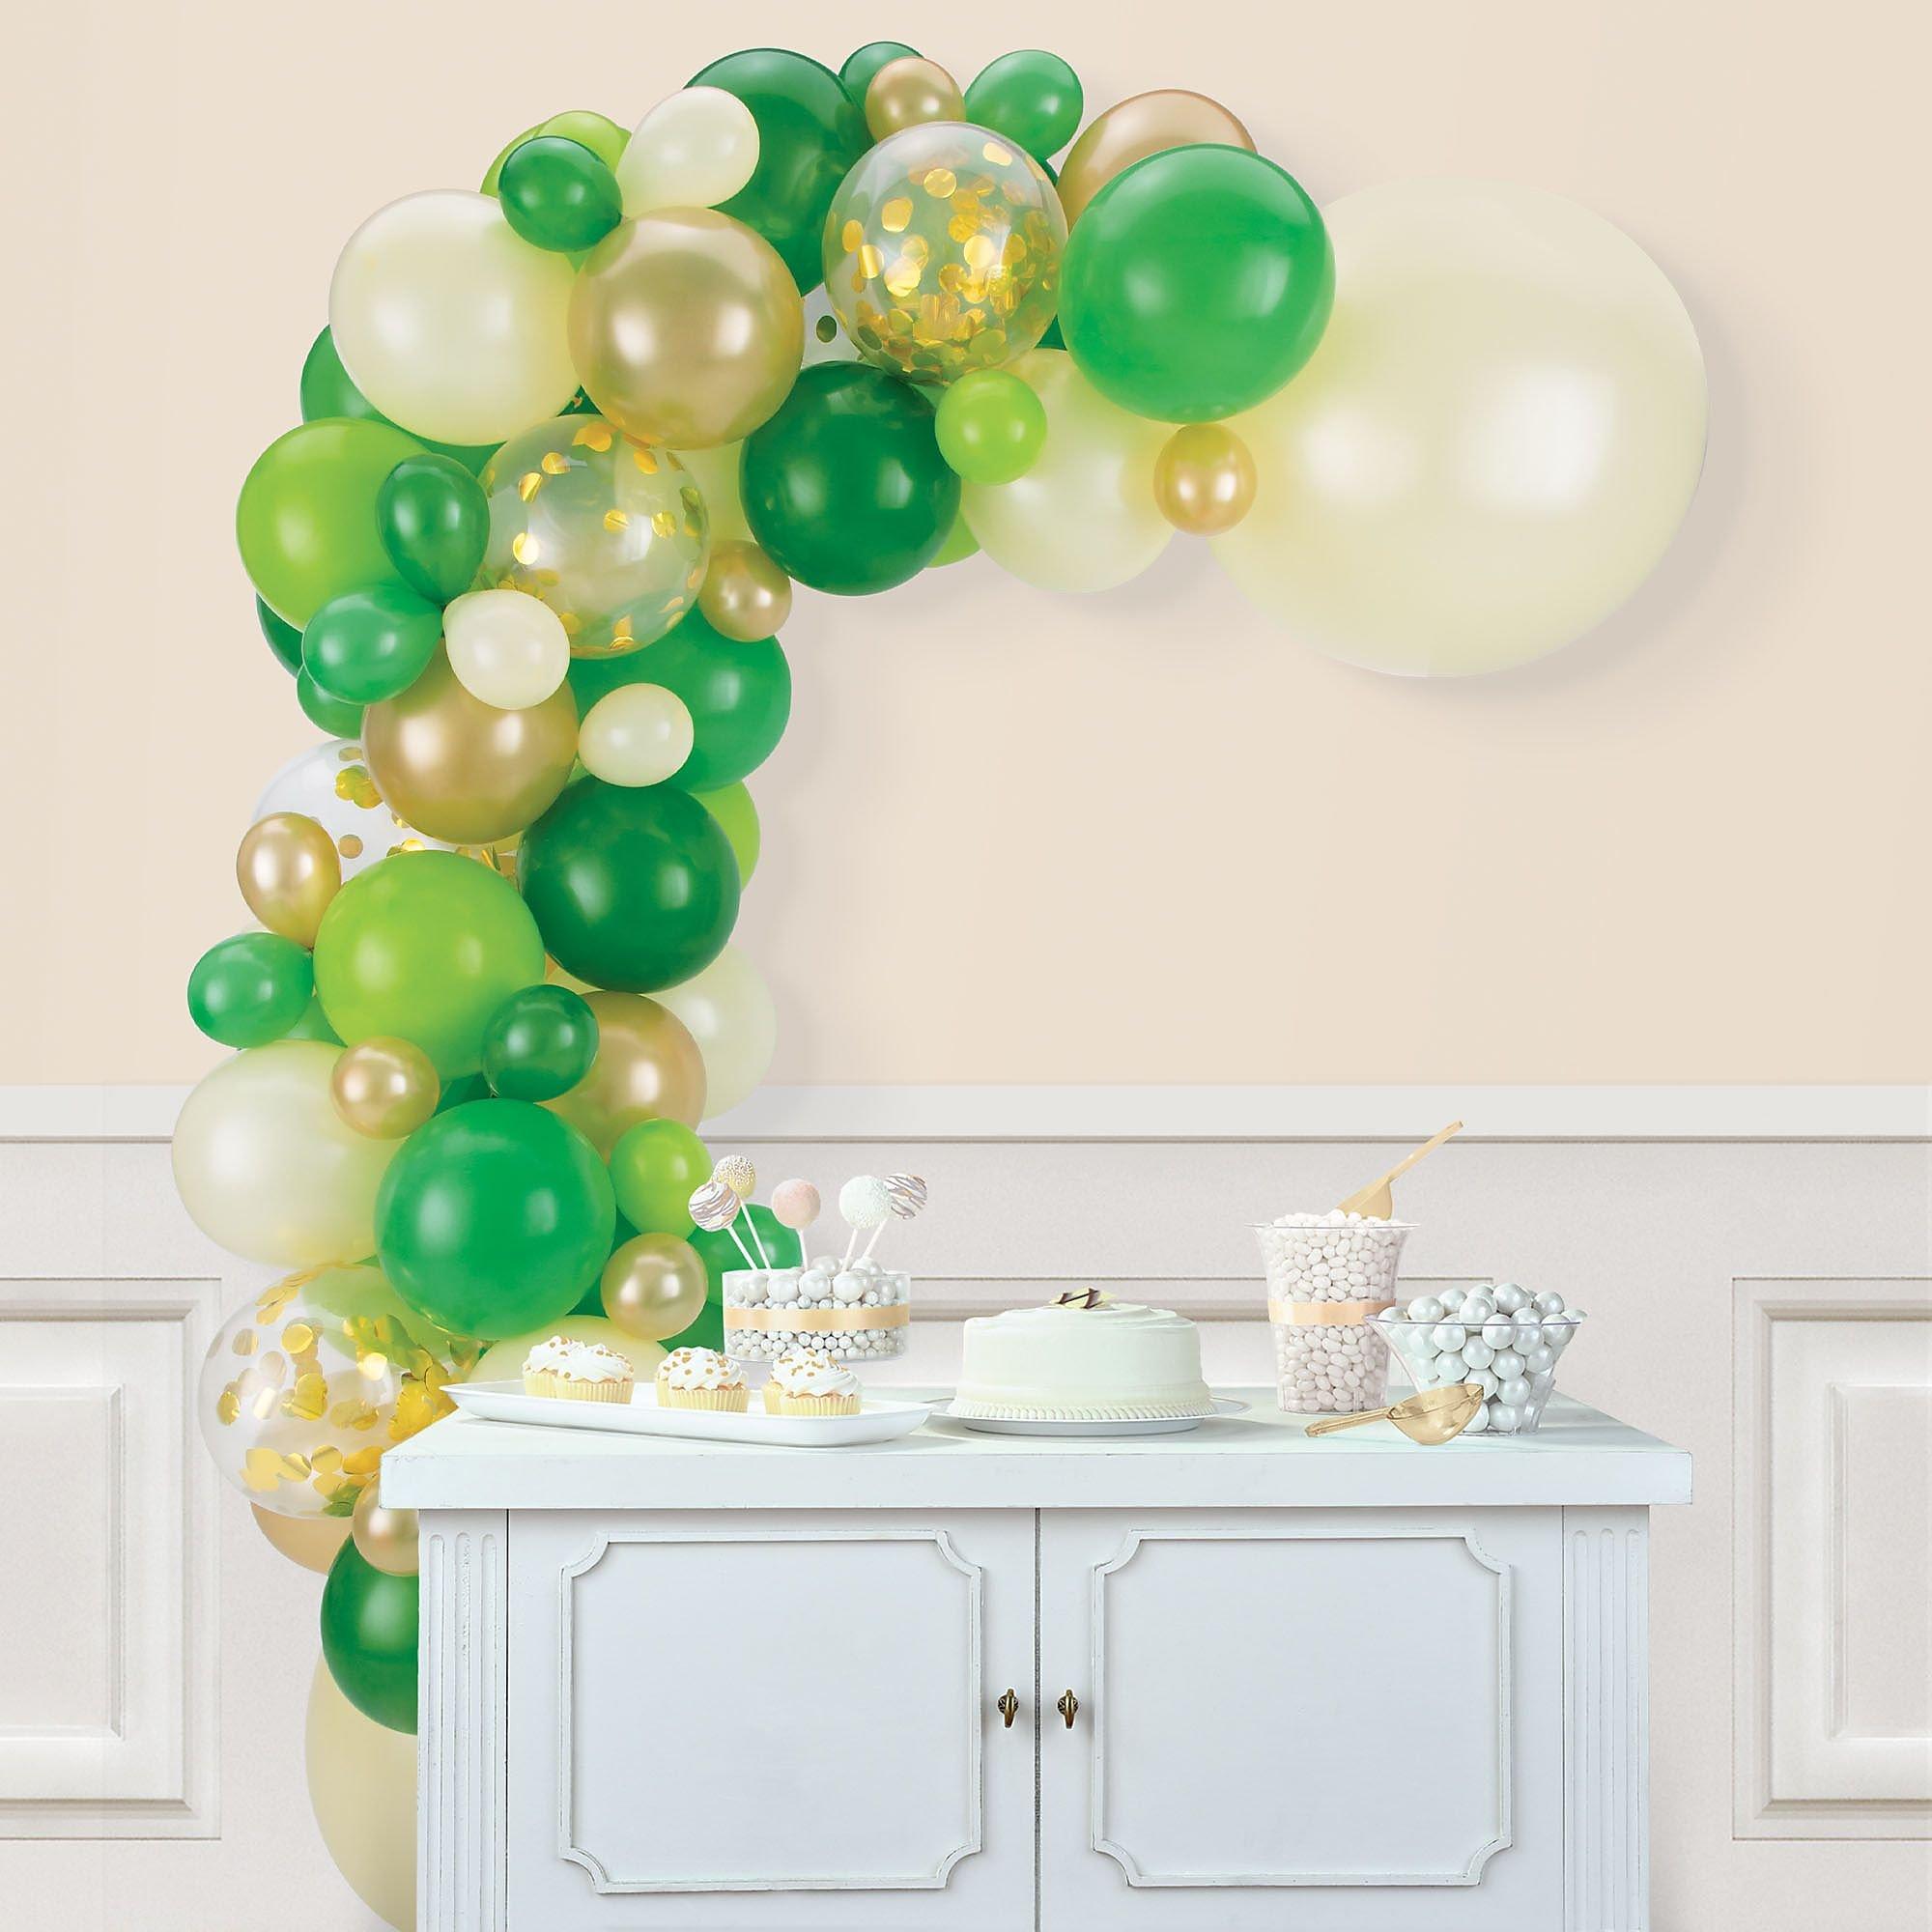 LV Gift Box - Ribbons & Balloons